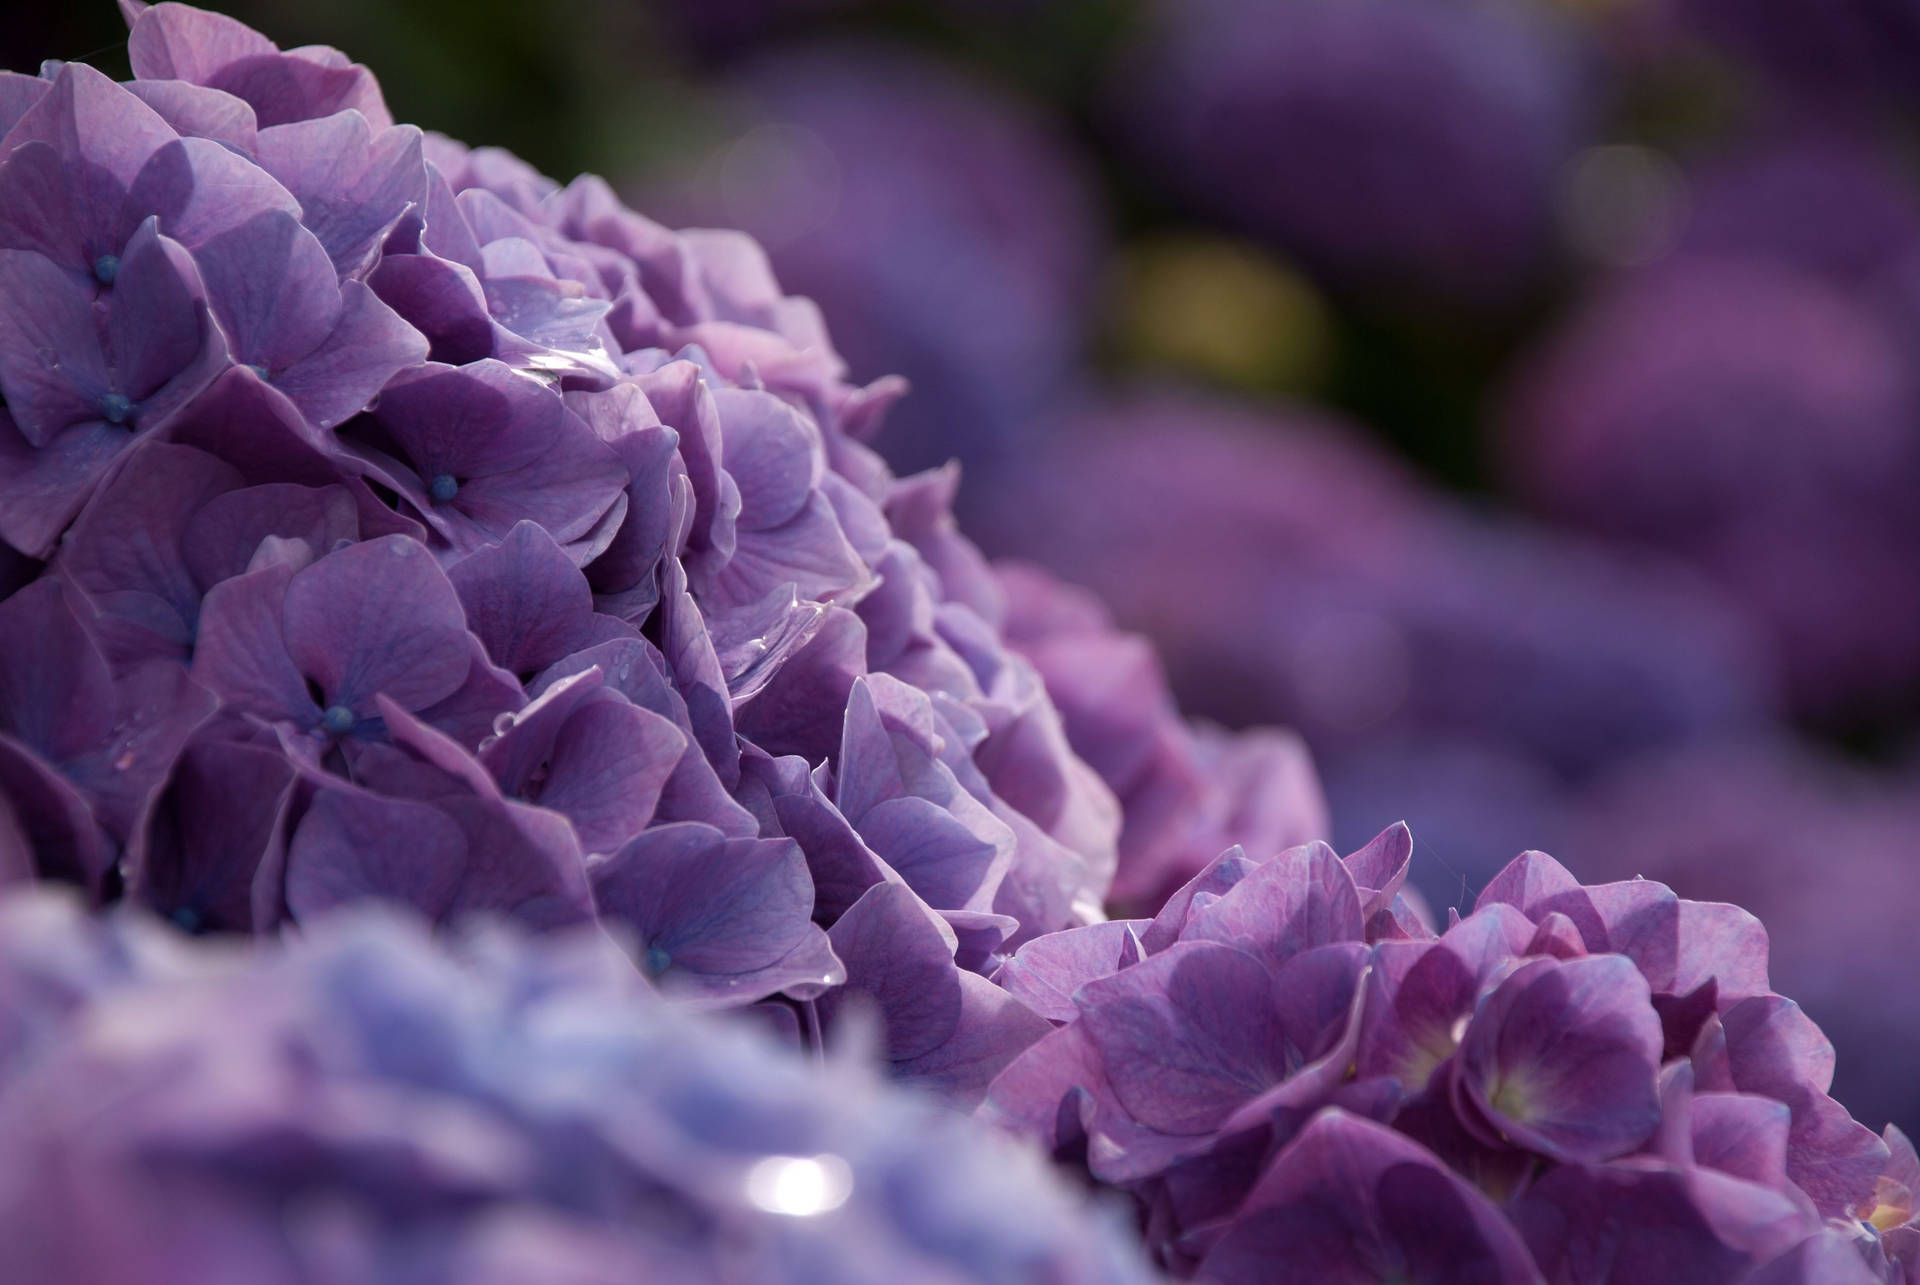 Purple Hydrangea Flowers With Water Droplets Wallpaper